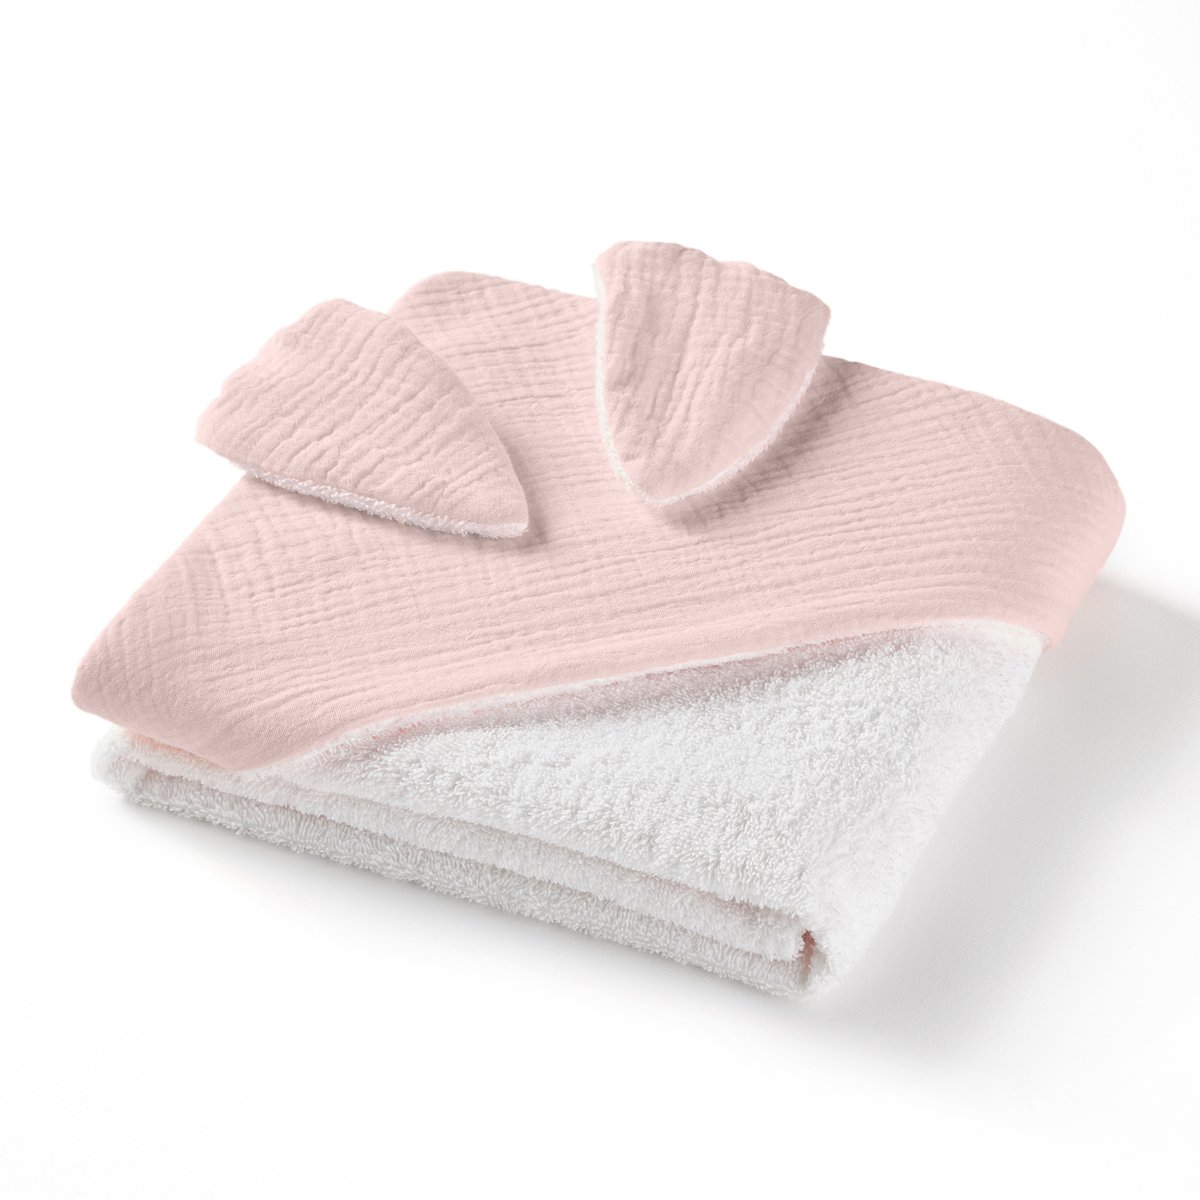 Накидка La Redoute Для ванной из хлопчатобумажной газовой ткани для новорожденного Kumla 70 x 70 см розовый, размер 70 x 70 см - фото 2